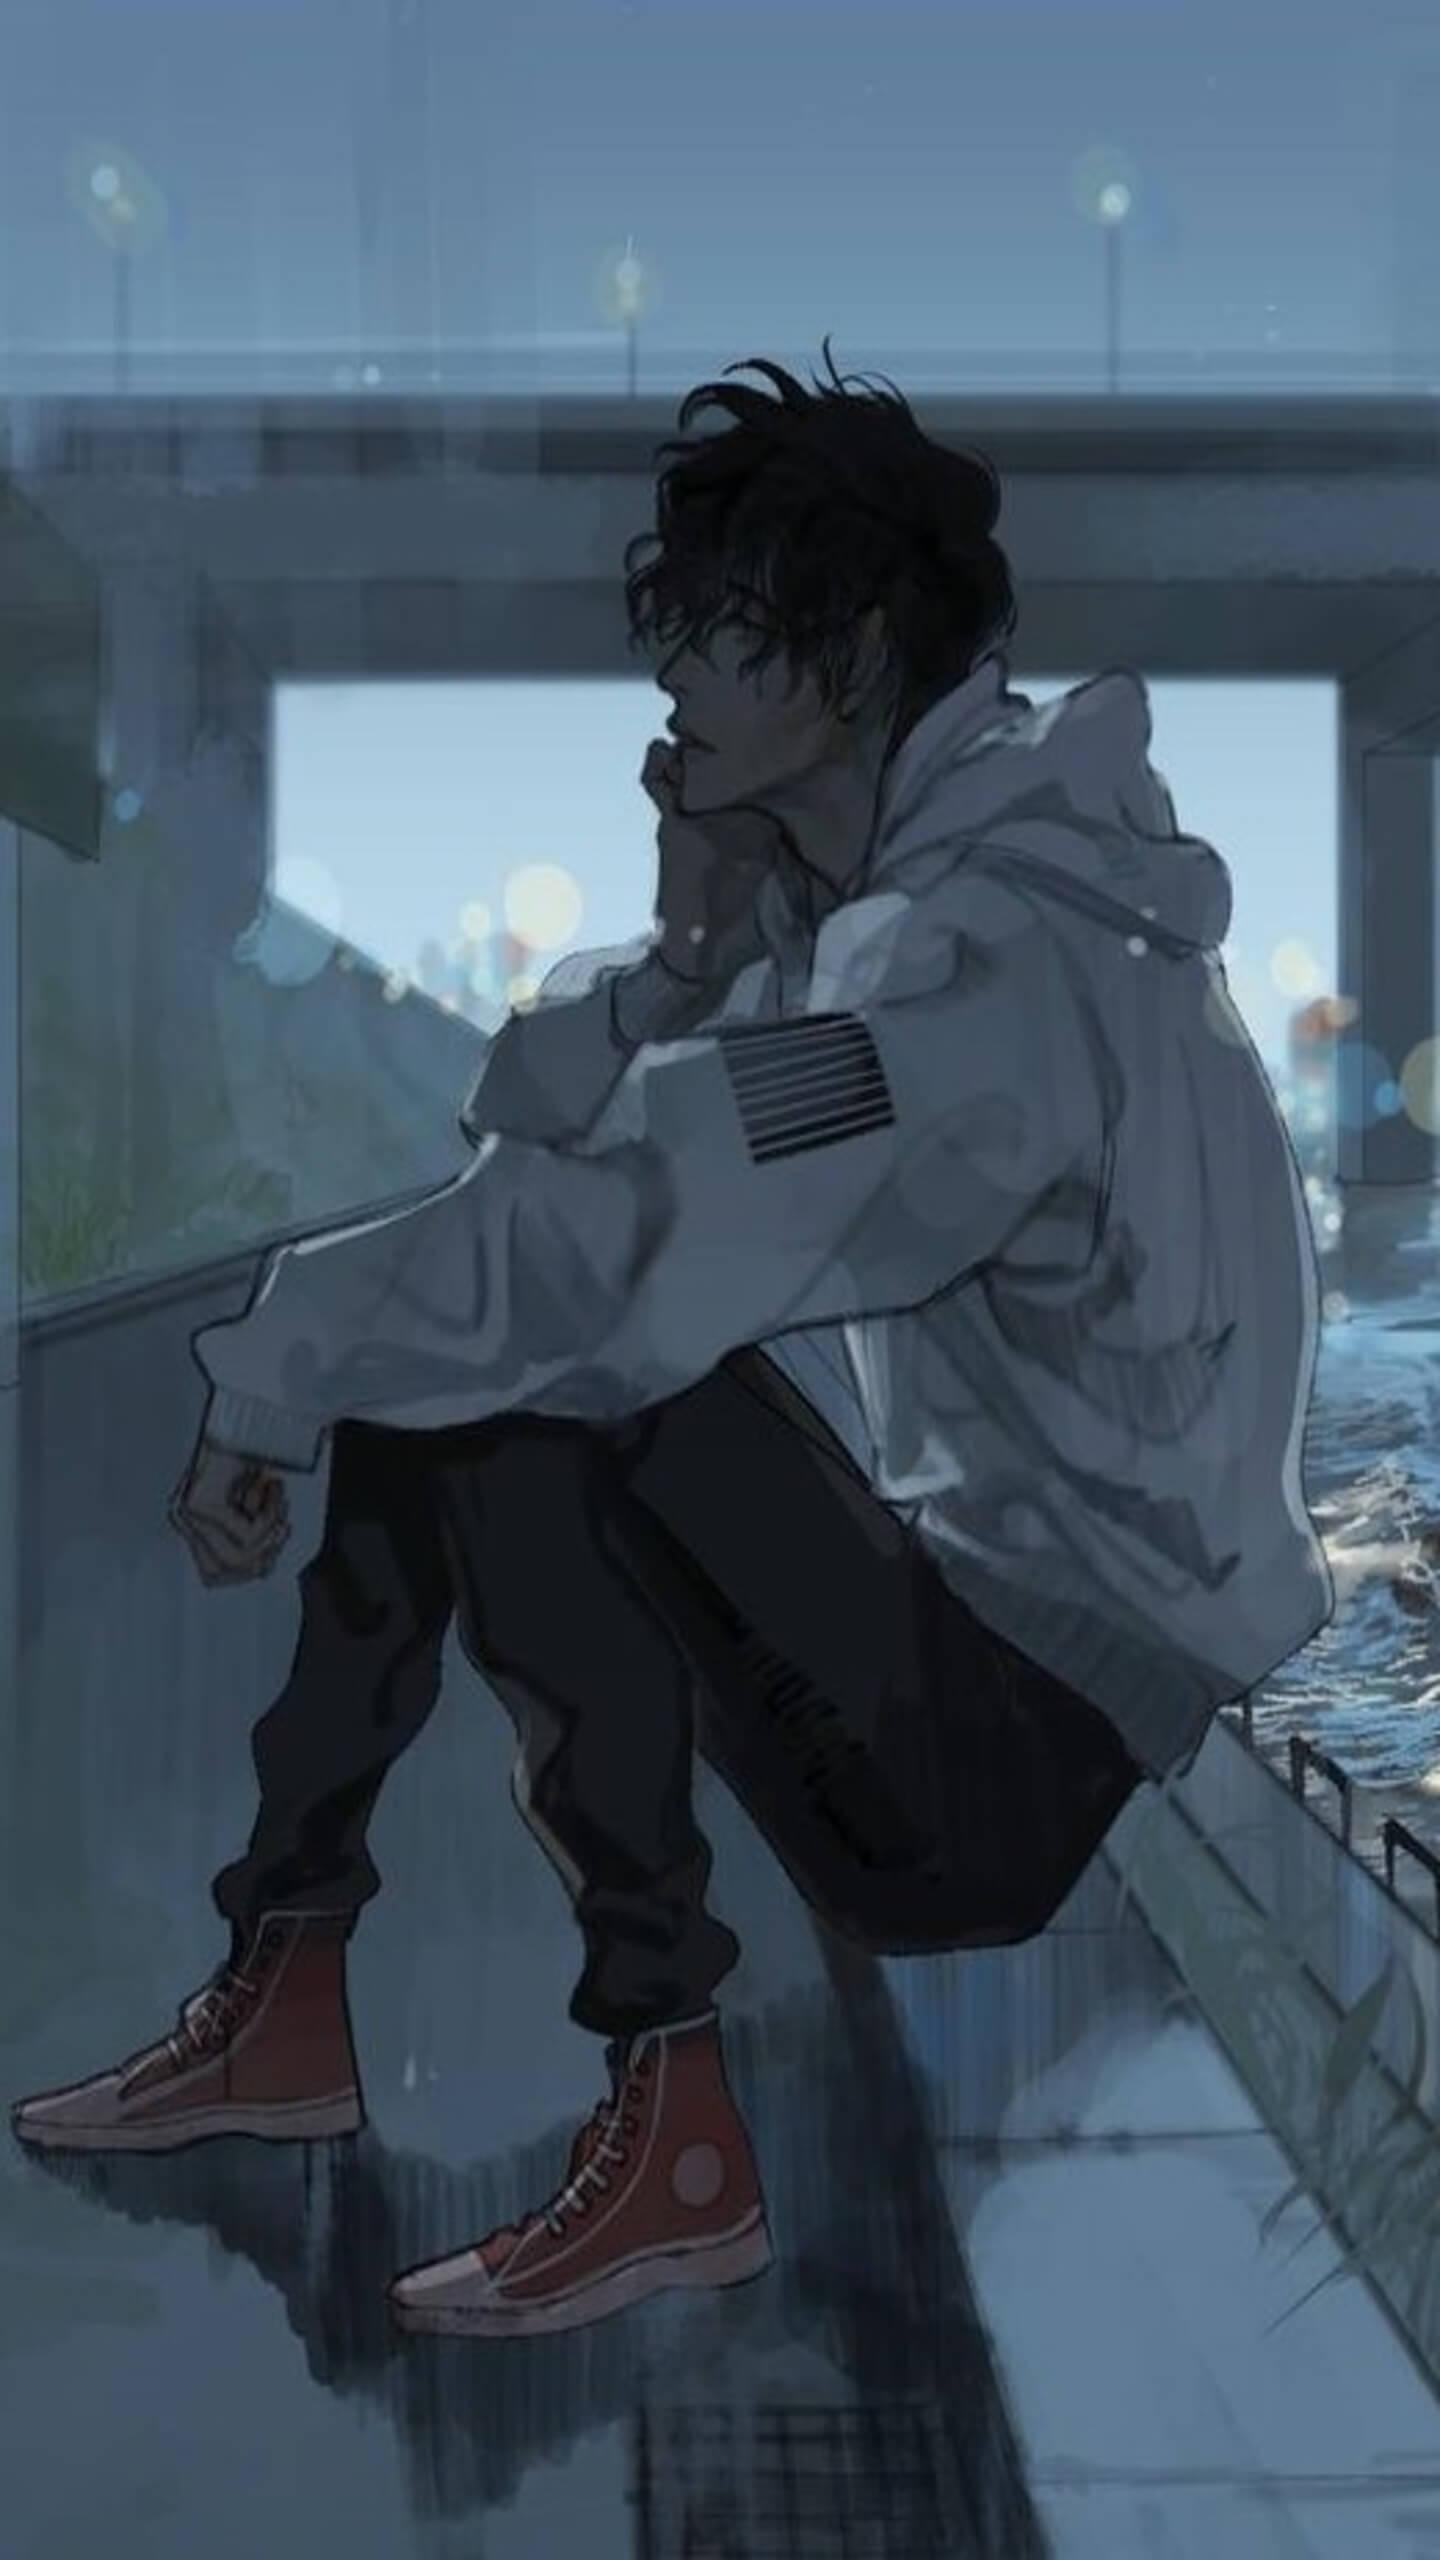 Anime Wallpaper HD: Anime Wallpaper Depressed Dark Aesthetic Anime Boy